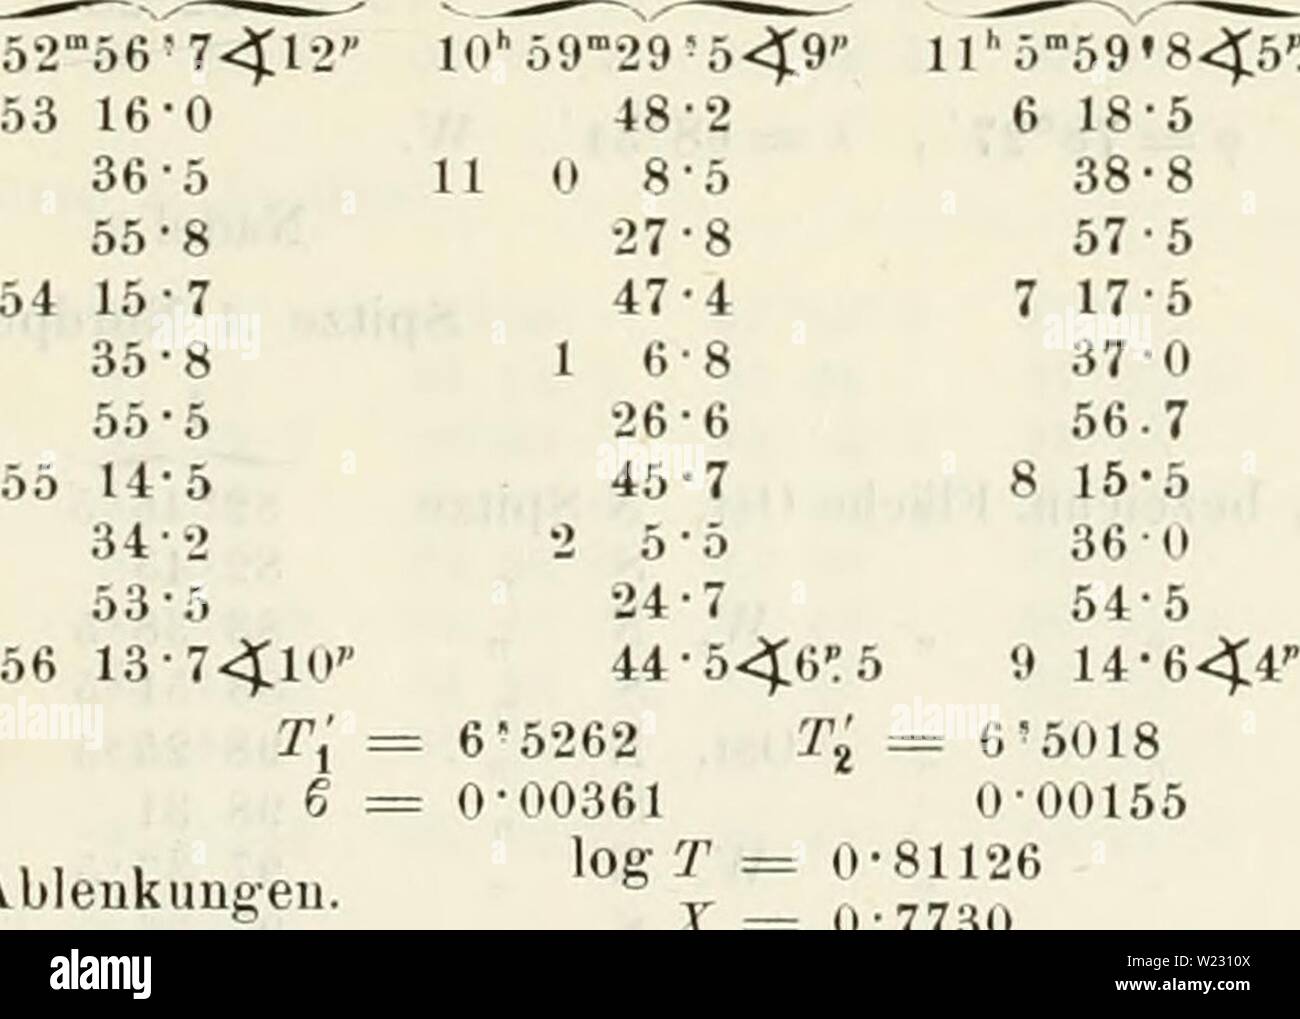 Archive image from page 122 of Denkschriften der Kaiserlichen Akademie der. Denkschriften der Kaiserlichen Akademie der Wissenschaften, Mathematisch-Naturwissenschaftliche Classe  denkschriftender35kais Year: 1878  1. Serie 2. Serie Magnet Nr. 3. I II III    /â = 54Â° 8'6 /' 54Â° 7w /' lo''Ã¶2'56'7-&lt;$12'' lO'59''29'5&lt;9' 1]')'59'8.4;5': 2 V, 351 12-5 348 58-5 15-7 â7?2 59-8 â7Â°2 i: 342 28-3 345 42 6 39-3 39-4 â7-5 v 117 52-8 â7-2 115 50-7 57-0 51-4 â7-5 55-5 26-6 56.7 t = â8Â°1 Â«4 118 12-6 120 40-5 17-3 -7 2 42-3 â7-5 V 54 7-7 54 13-7 w' 65 35-5 65 28-2 p â 13-6 â 6.2 'j 65 2] -9 65 22 Stock Photo